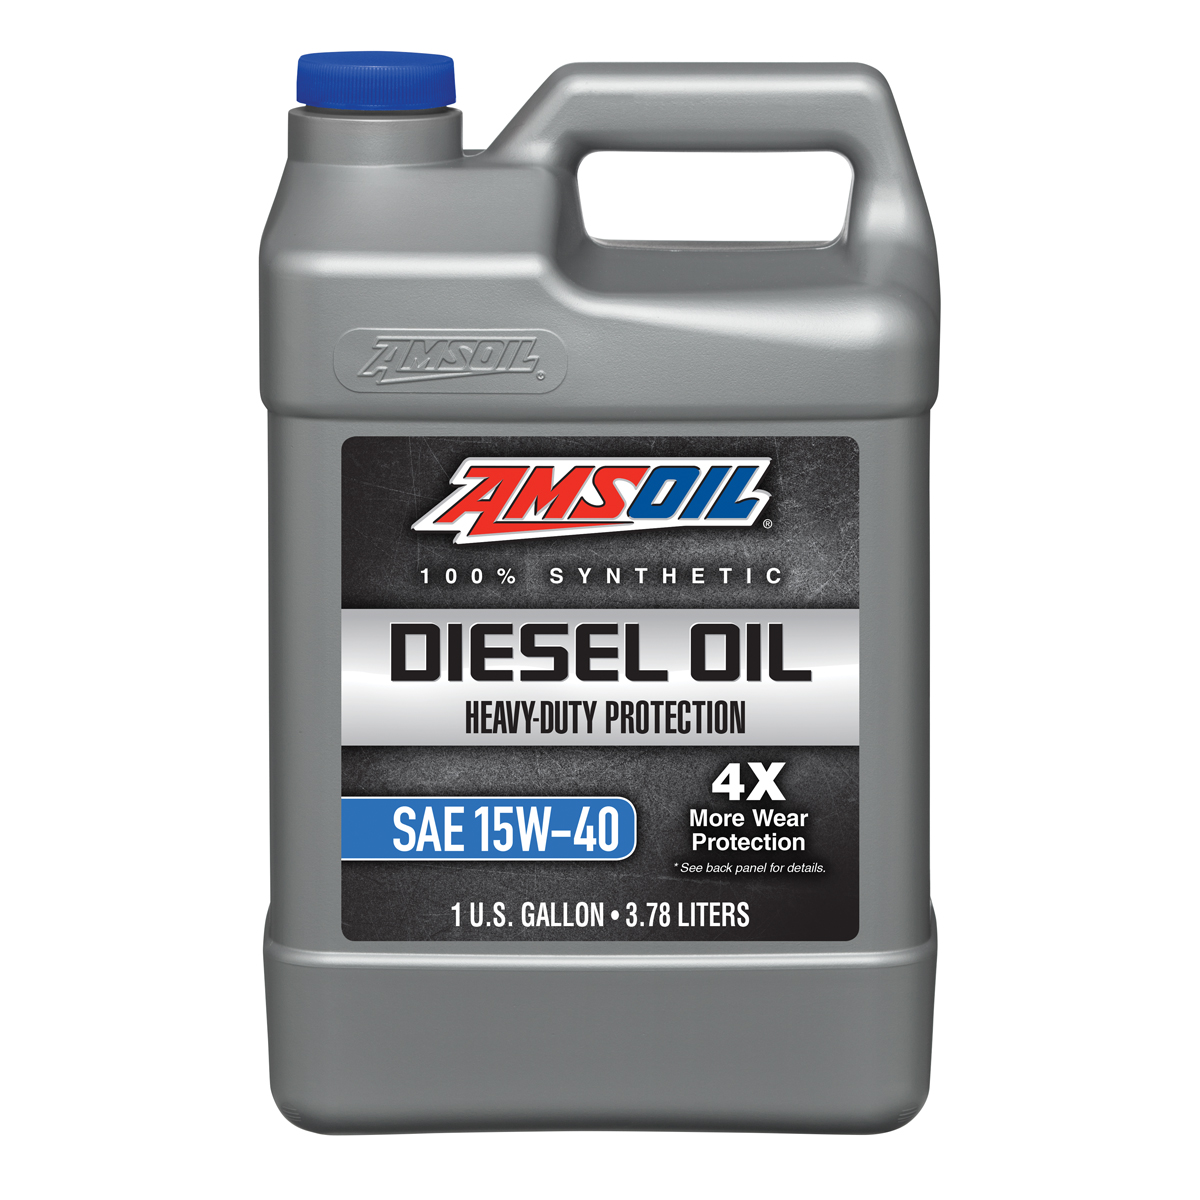 Heavy-Duty Synthetic Diesel Oil 15W-40, 1G	diesel-motor-oil